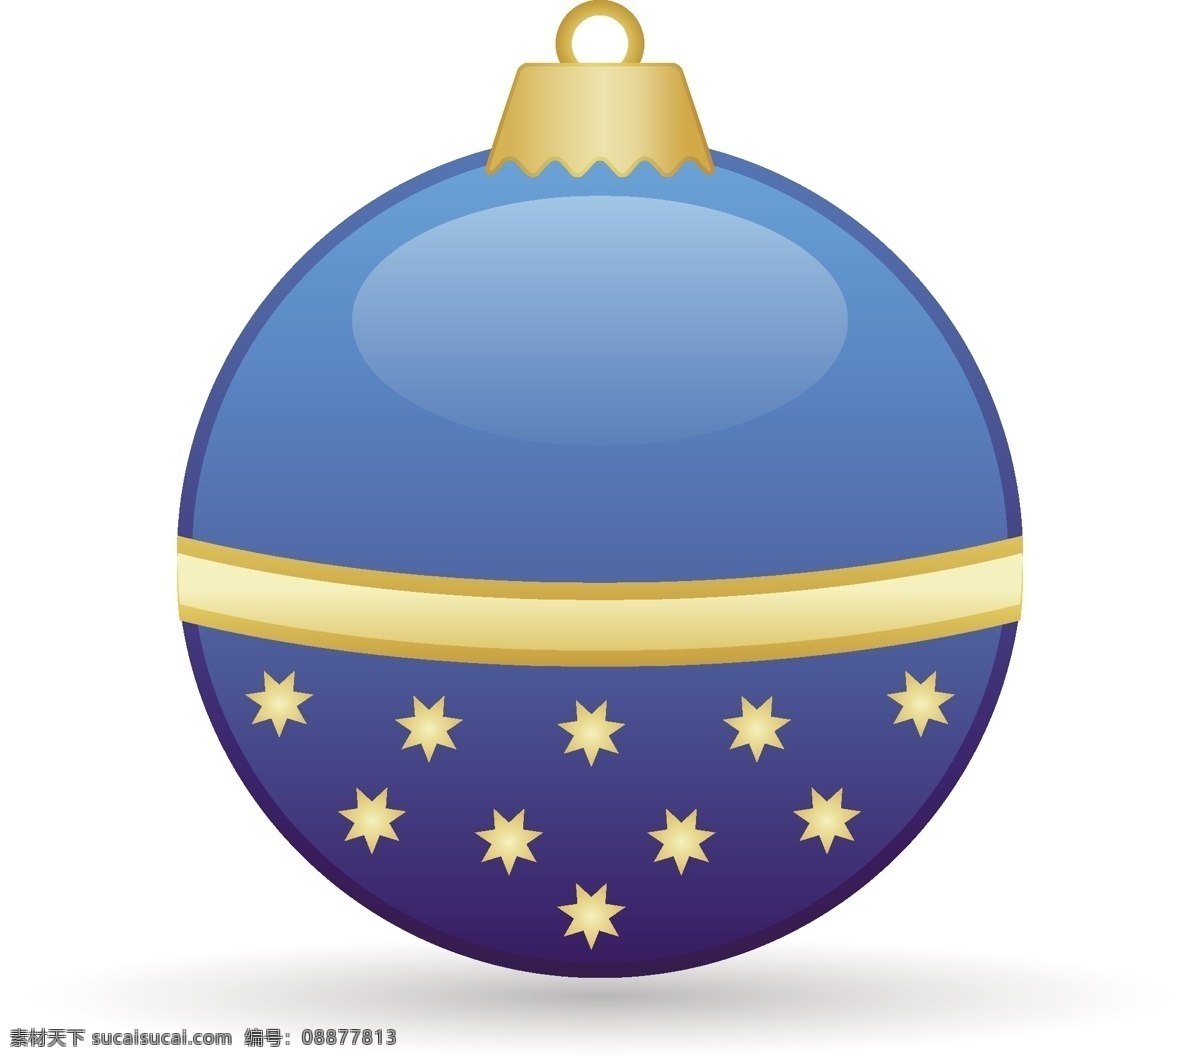 卡通 矢量 小 装饰 图 圣诞节 小星星 蓝色 球体 圣诞树装饰物